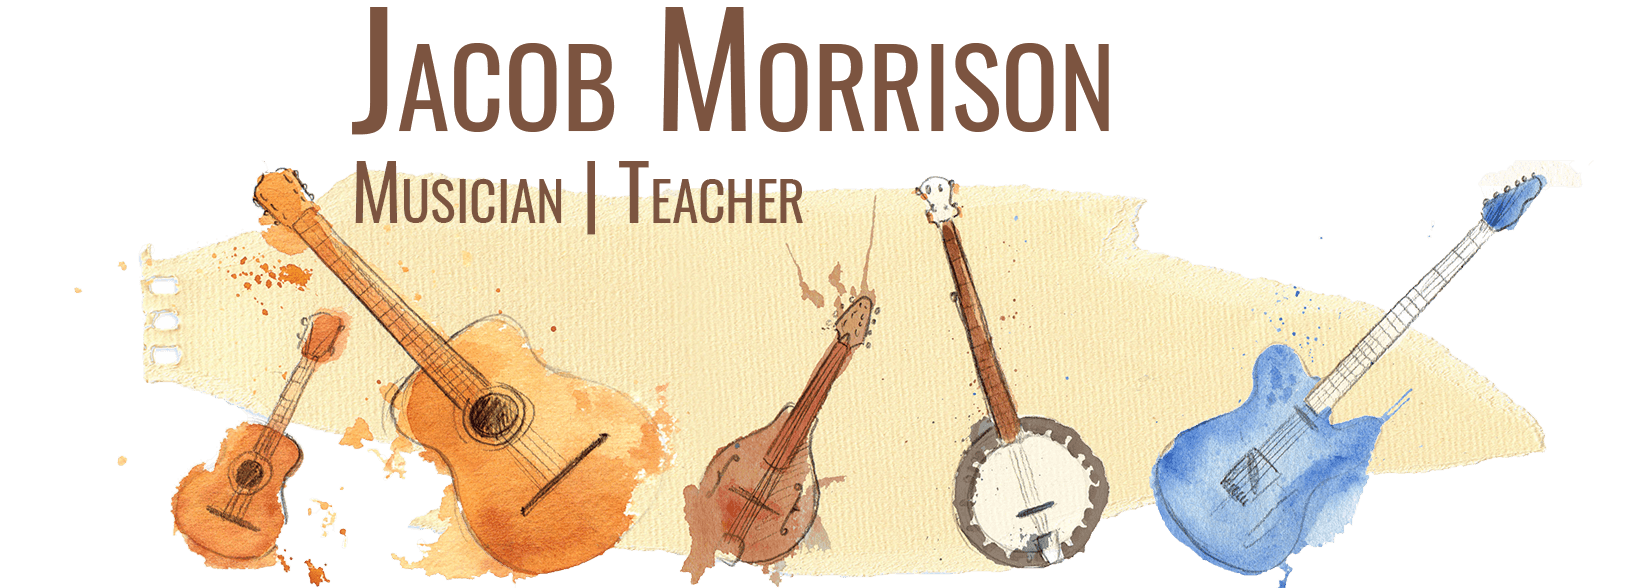 Jacob Morrison